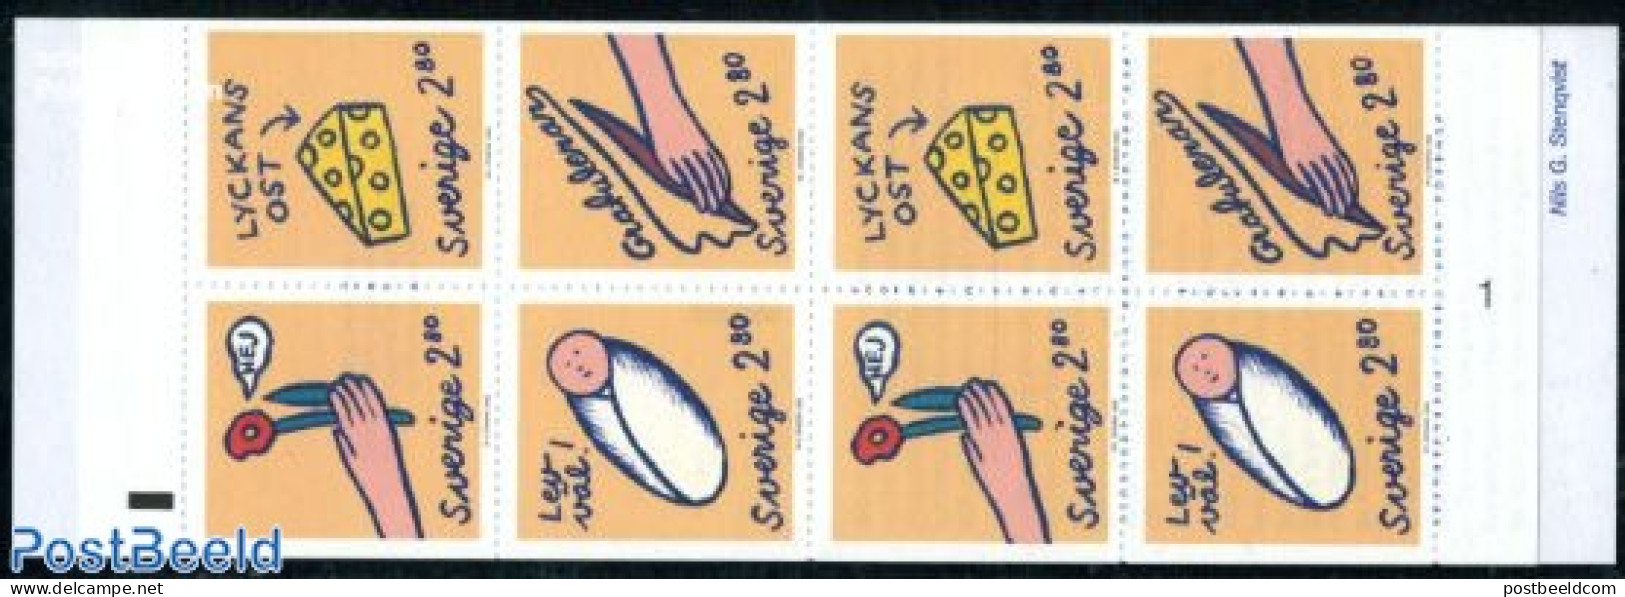 Sweden 1992 Greeting Stamps Booklet, Mint NH, Stamp Booklets - Ongebruikt